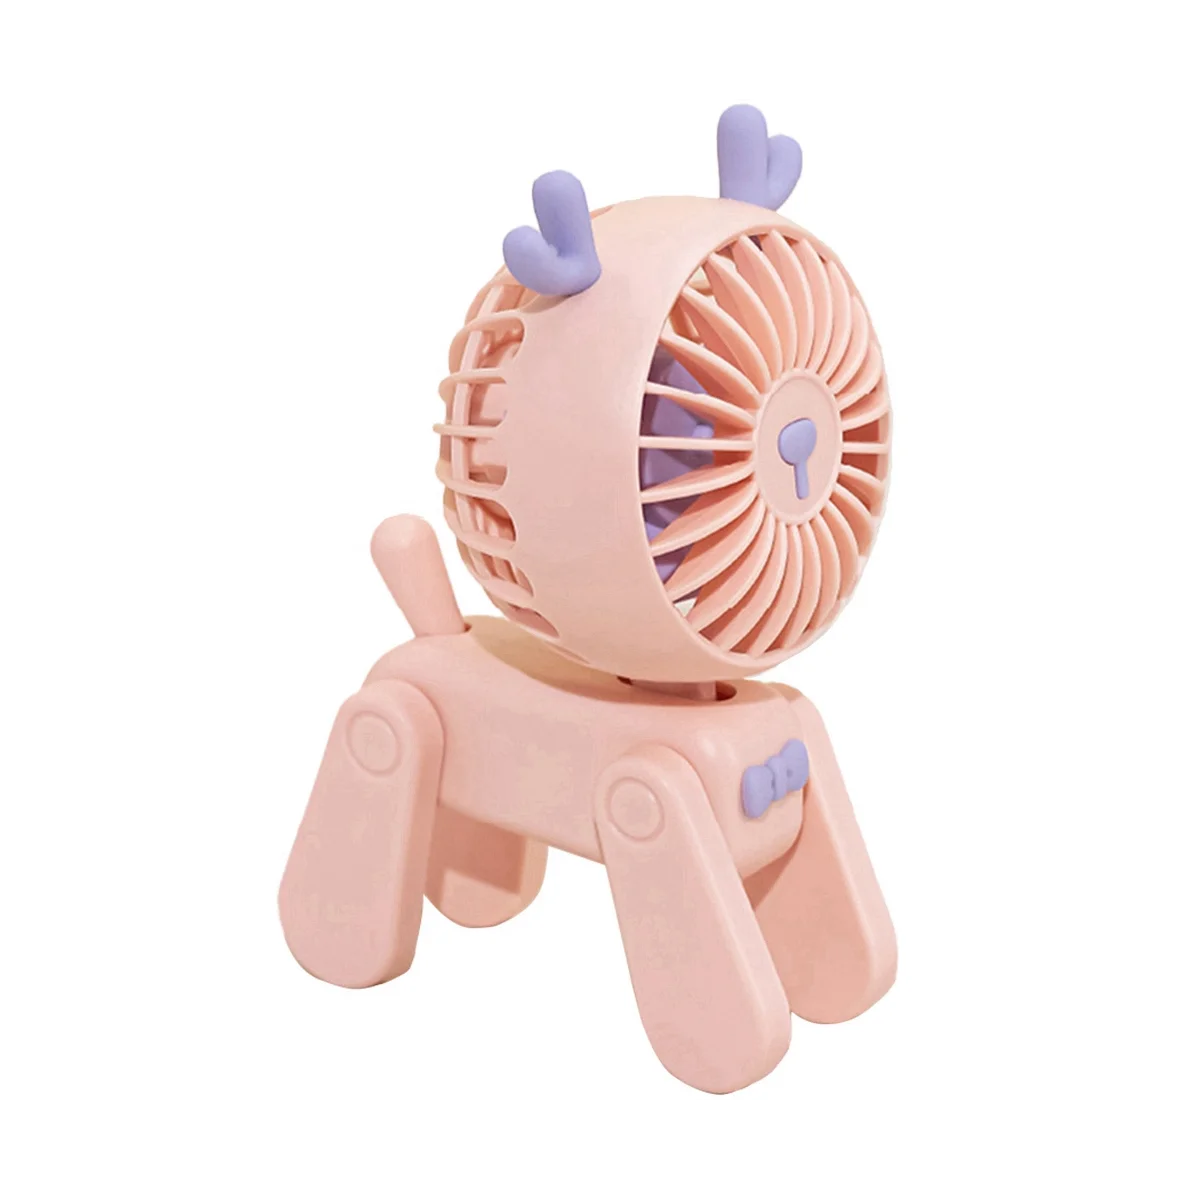 

Маленький настольный вентилятор, стабильный стоячий настольный мини-вентилятор для взрослых и детей, для путешествий (розовый)